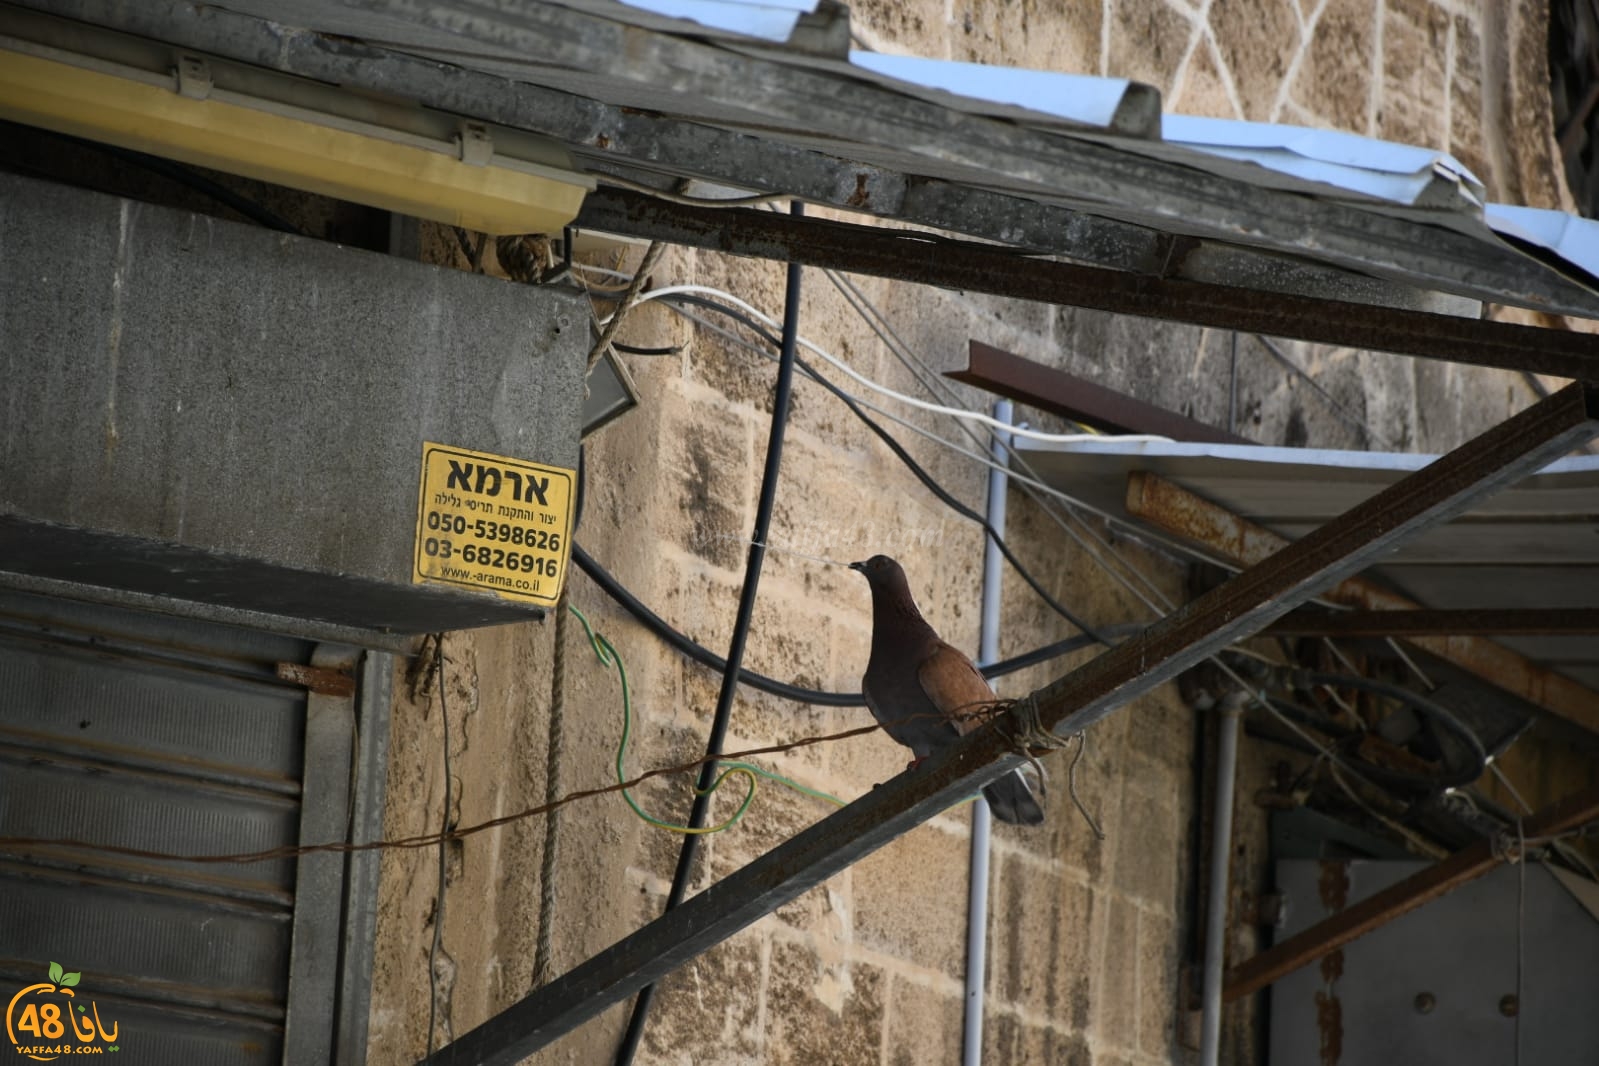  بالصور: صديق الموقع يُوثّق مراحل بناء حمامة لعشها في يافا 